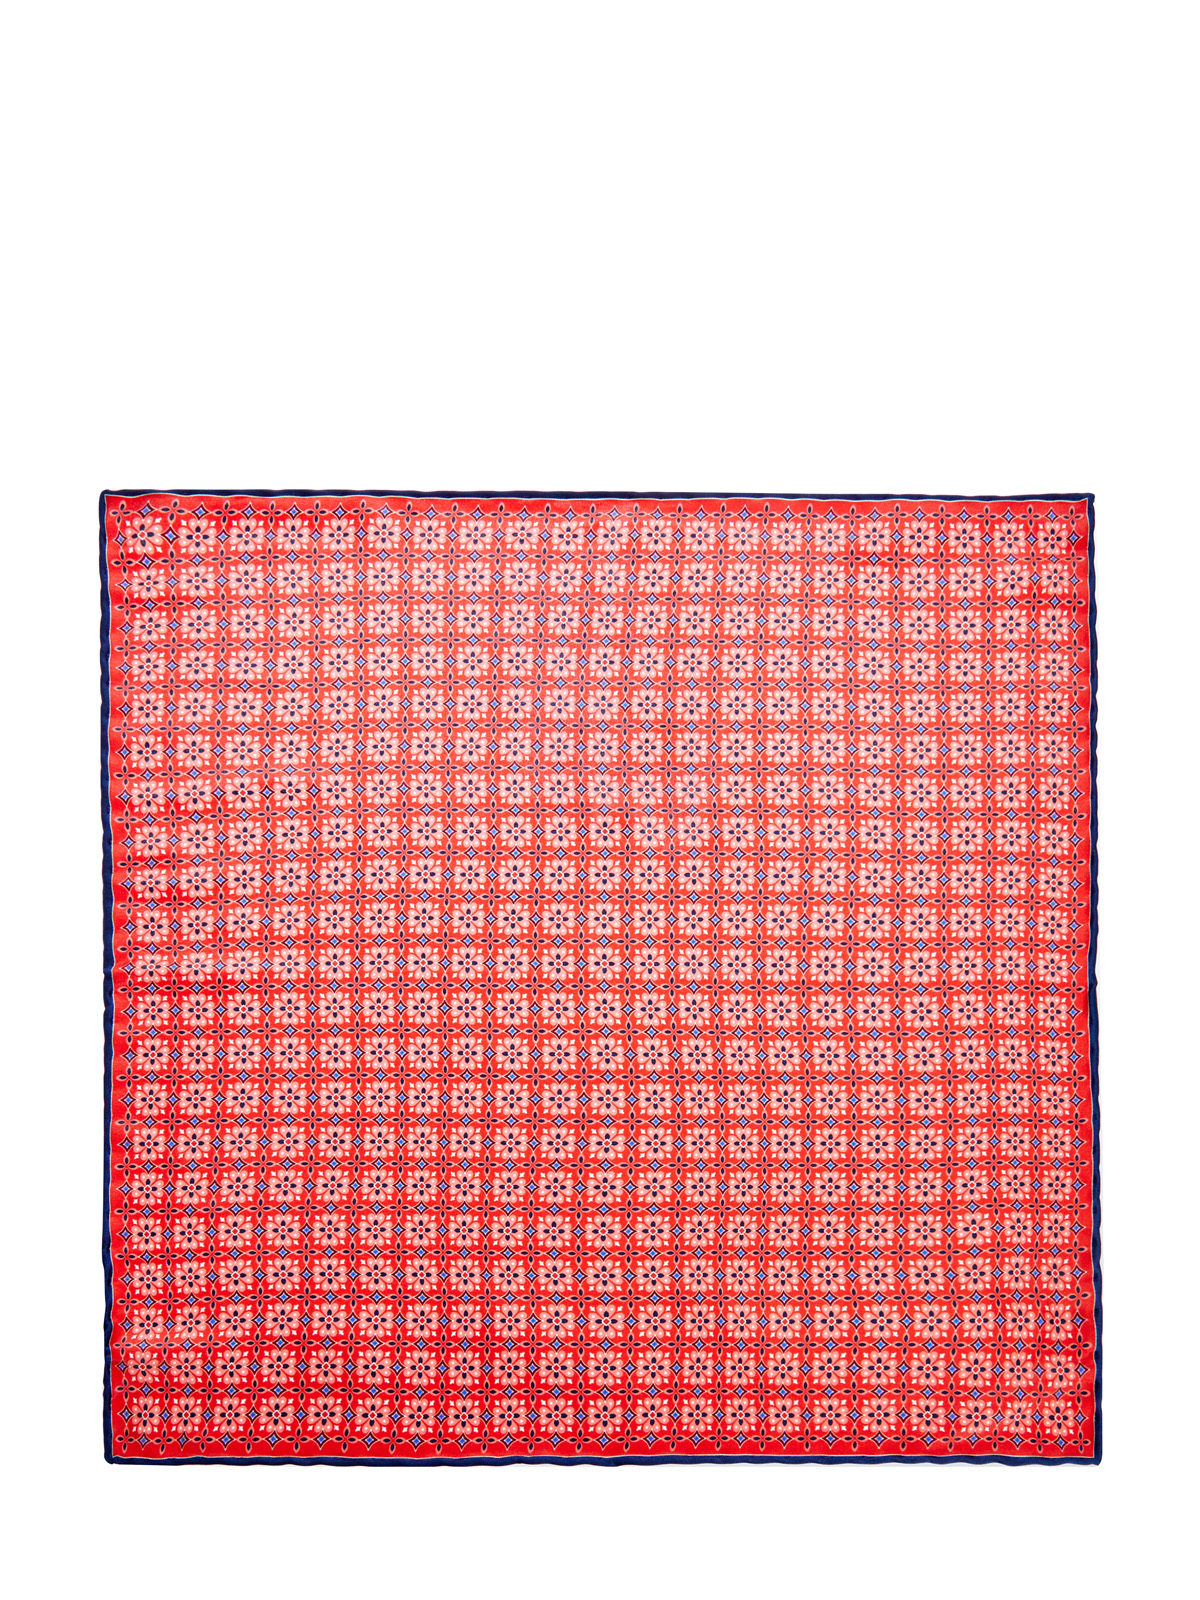 Шелковый платок-паше ручной работы с принтом CANALI, цвет красный, размер 40.5;41;41.5;42;42.5;43;43.5;44;45